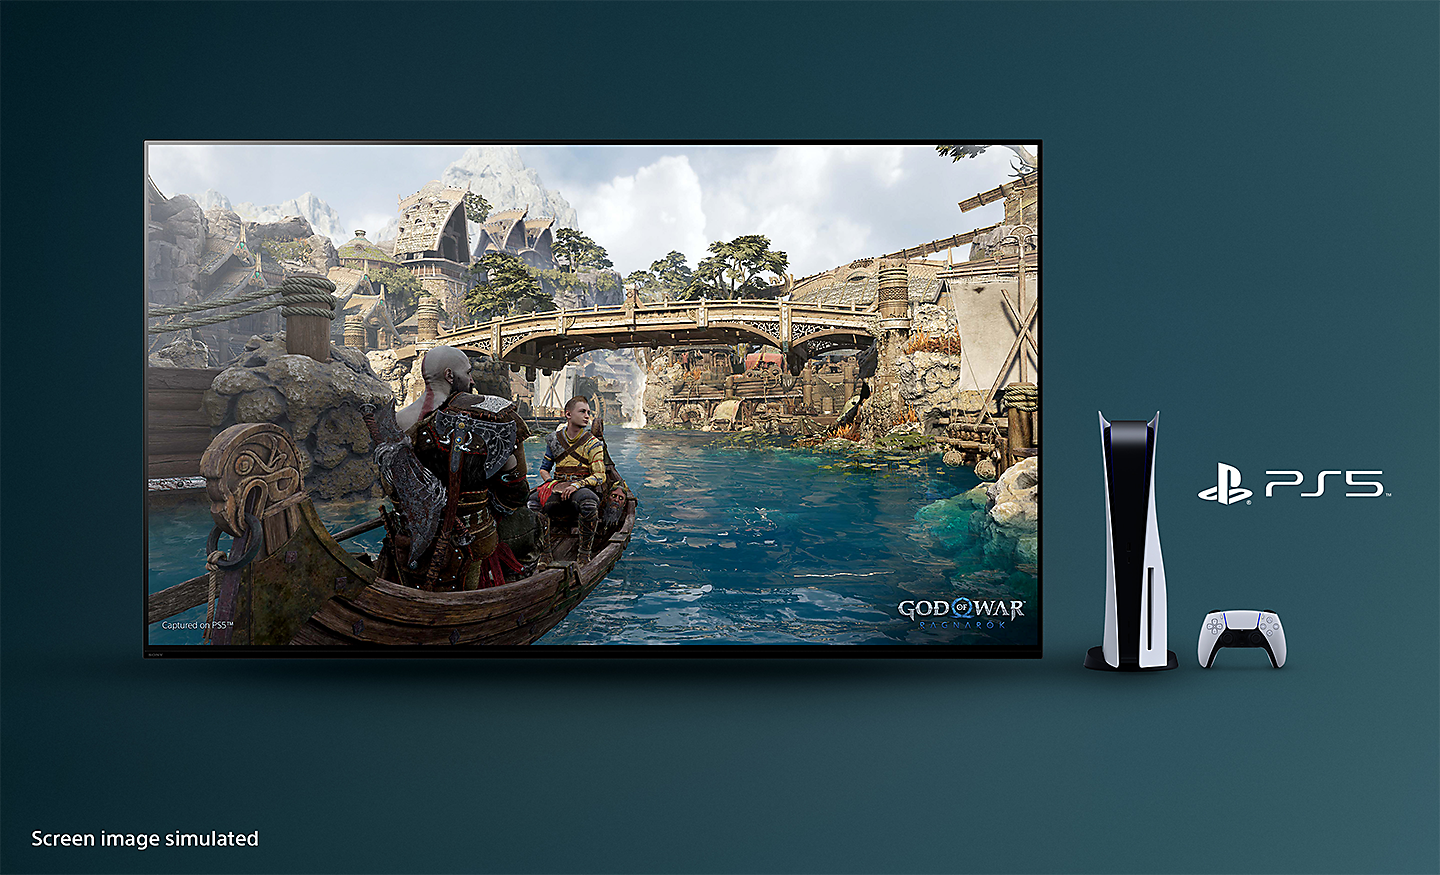 ทีวี BRAVIA พร้อมภาพหน้าจอของ God of War: Ragnarok ที่แสดงภาพเรือบนแม่น้ำและสะพานเป็นฉากหลัง โดยมีคอนโซล PS5™ คอนโทรลเลอร์ และโลโก้ PS5™ ทางด้านขวาของทีวี